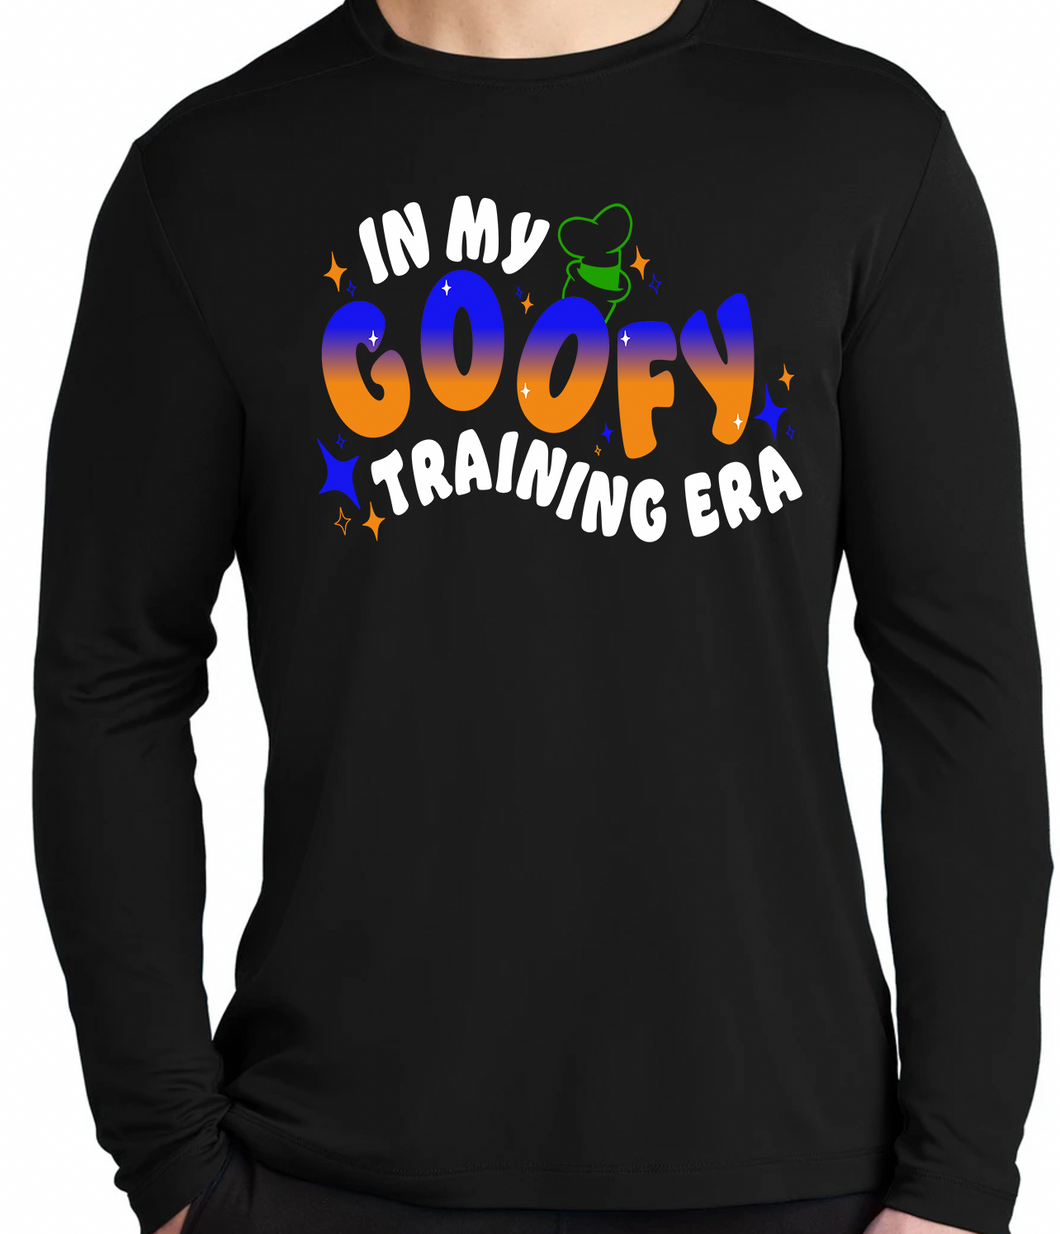 Goofy Training Era (Comfort Colors shirt)